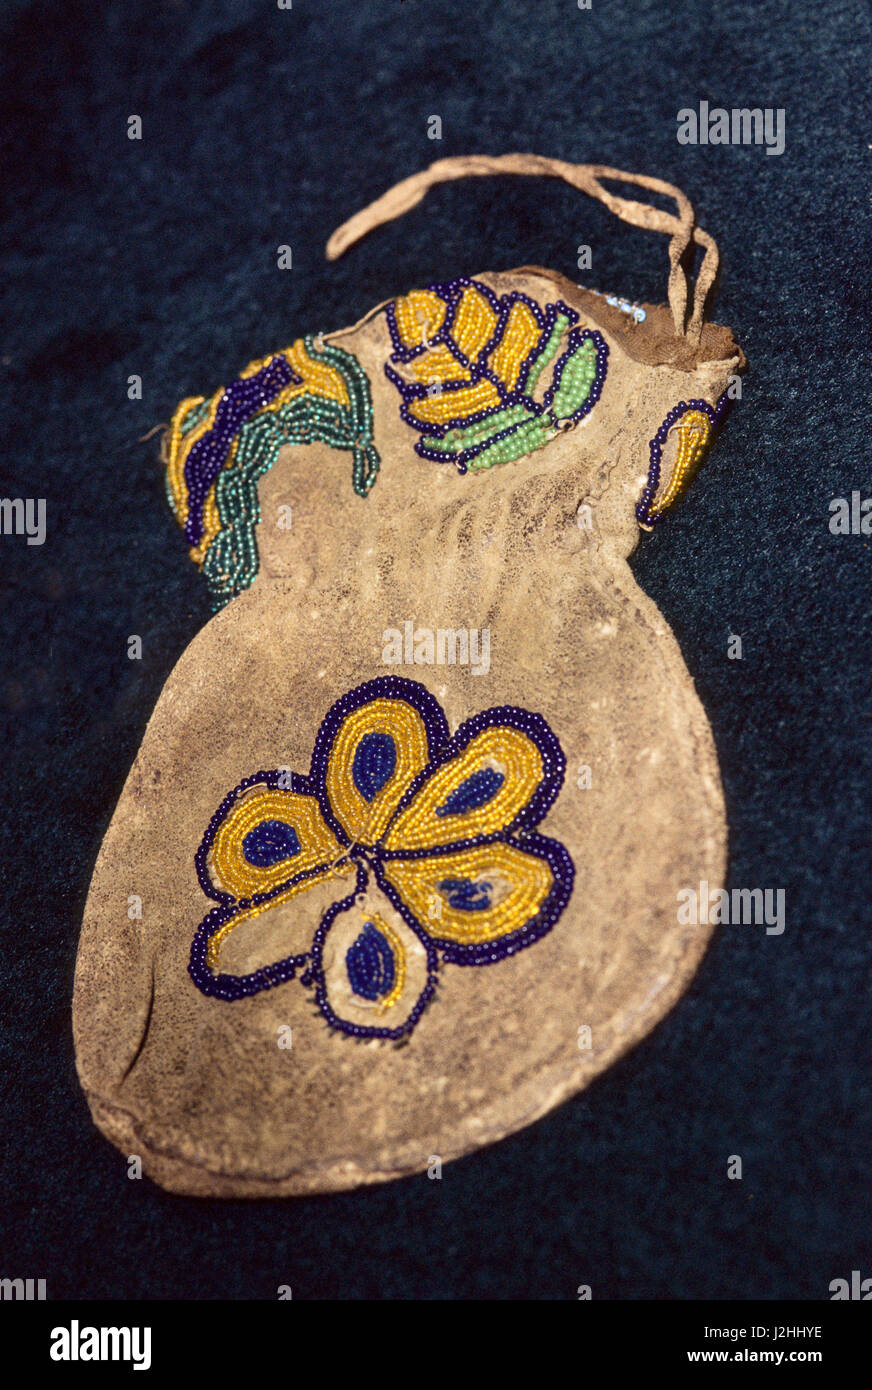 Miami Leder Hirschleder Beutel mit Kordelzug um die Spitze und mit floralen Mustern der Perlenstickerei verziert. Stockfoto